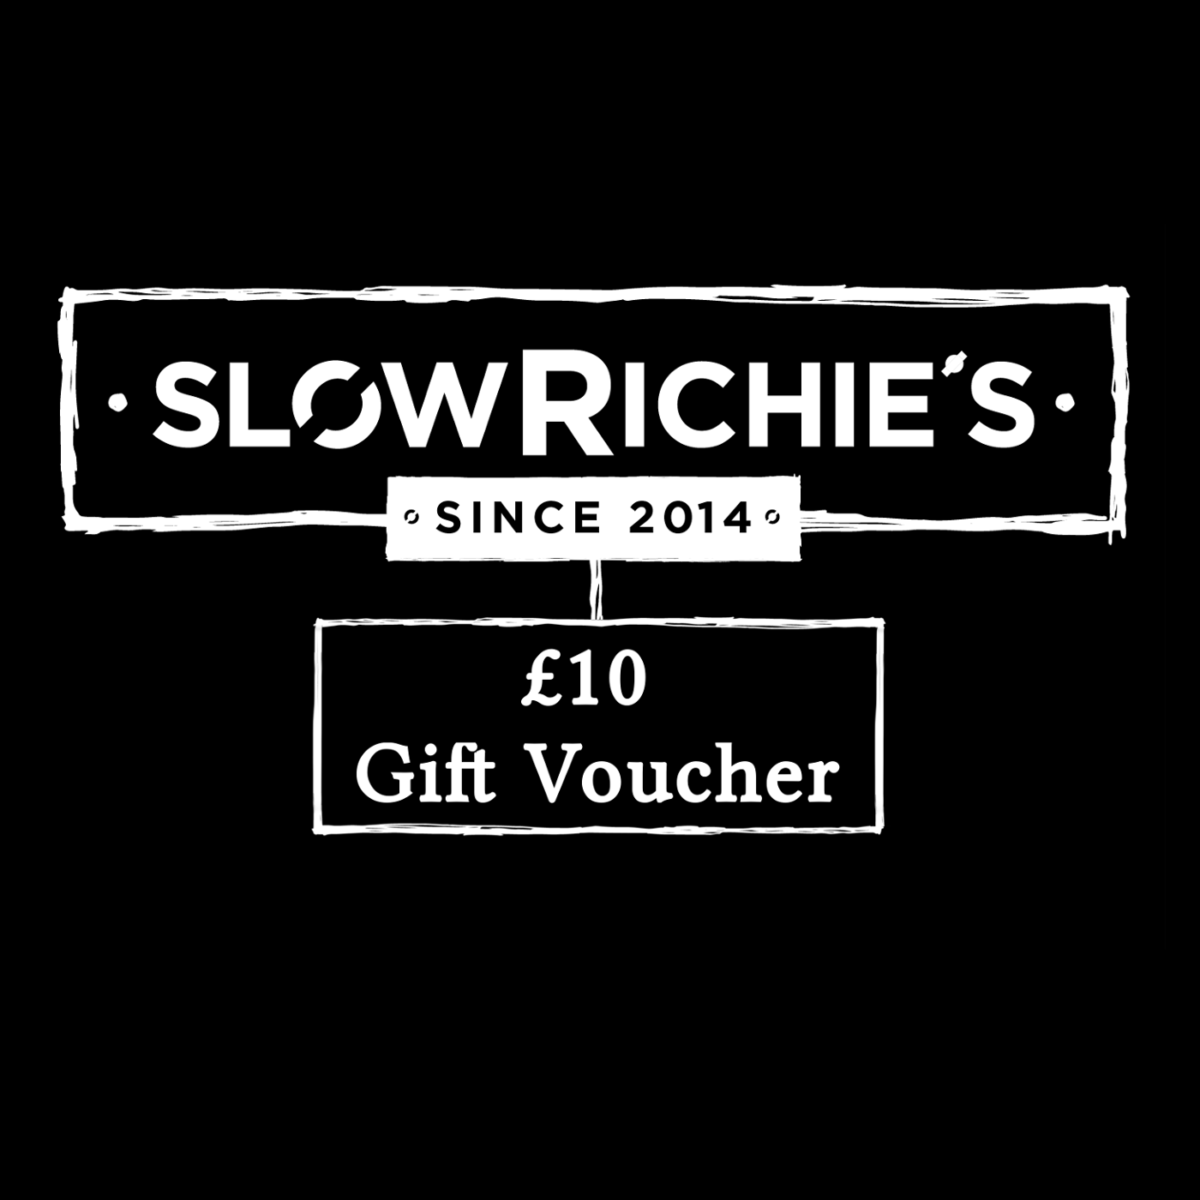 Slow Richie's £10 Gift Voucher